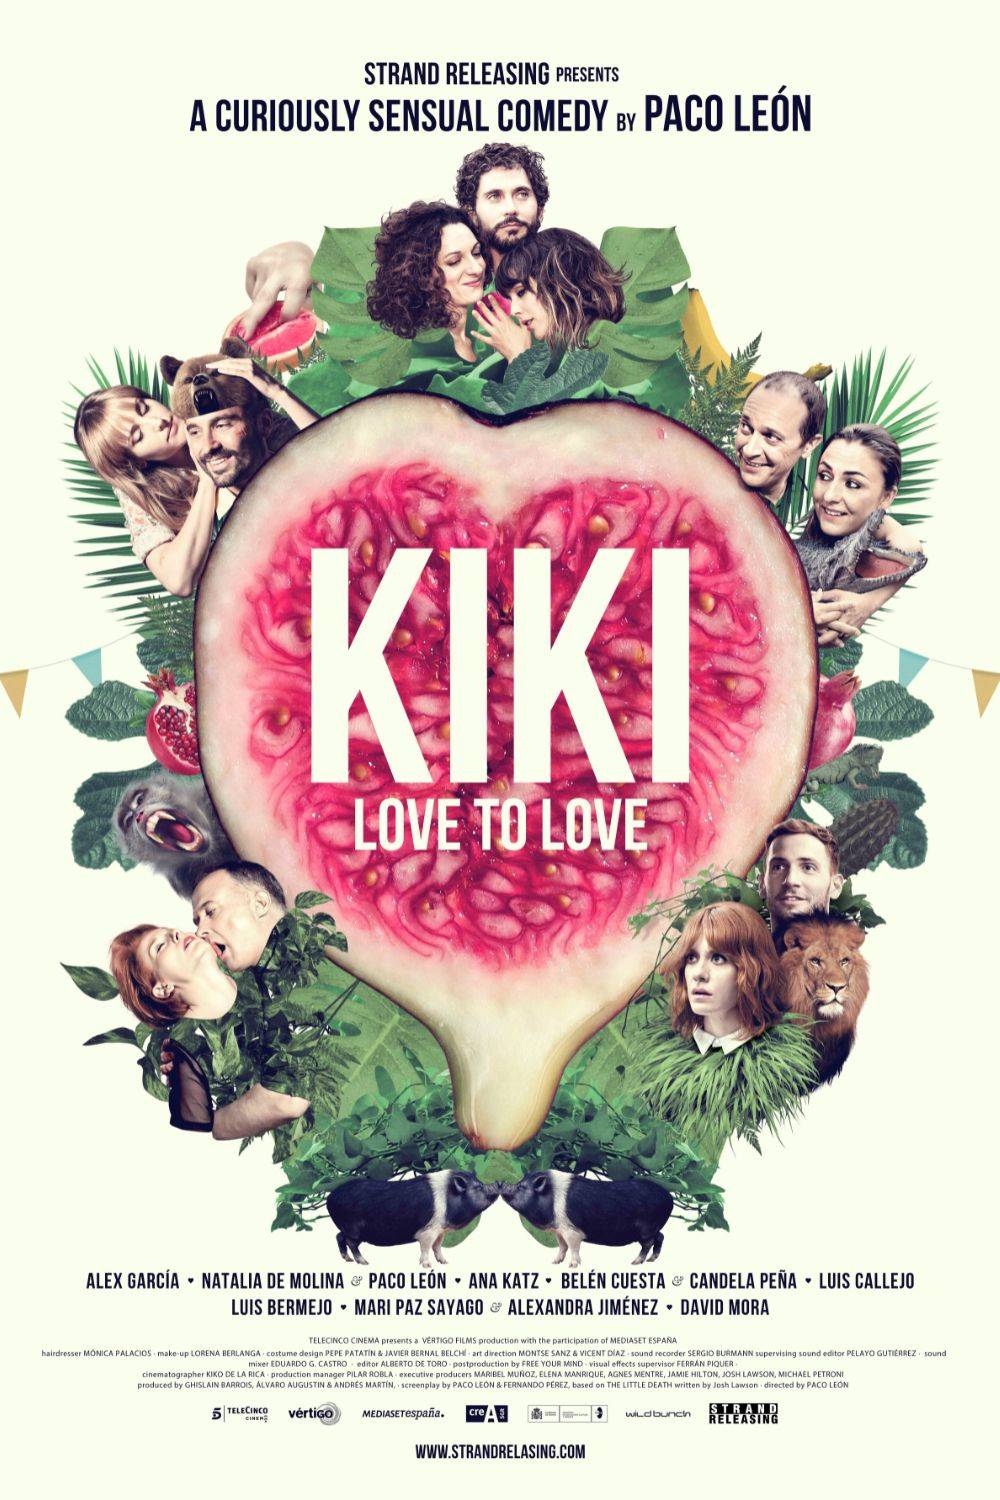 Películas eróticas: Kiki el amor se hace (2016)